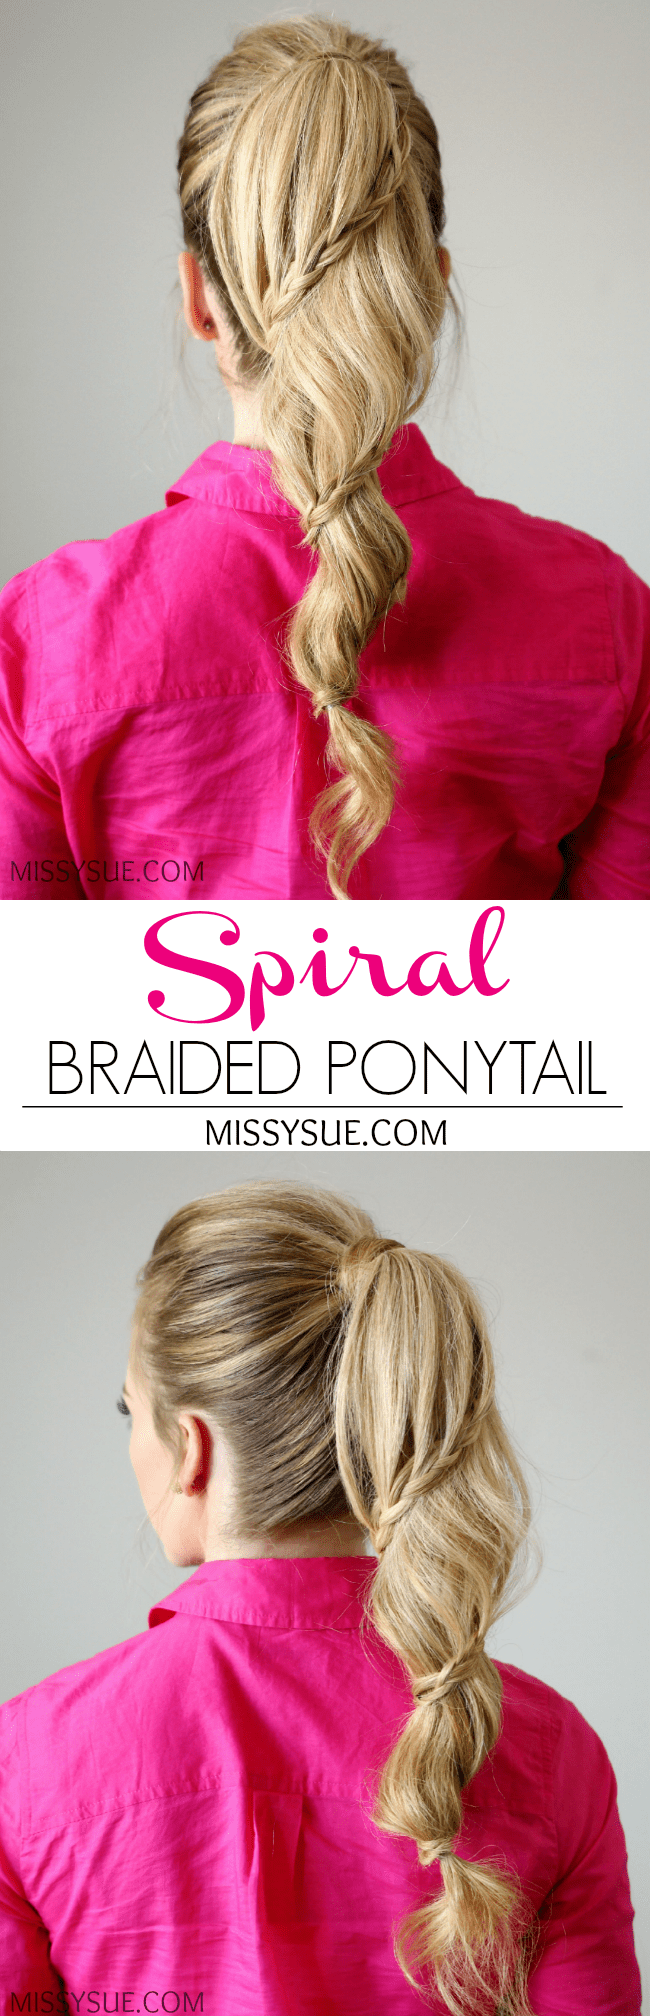 Spiral Braided Ponytail